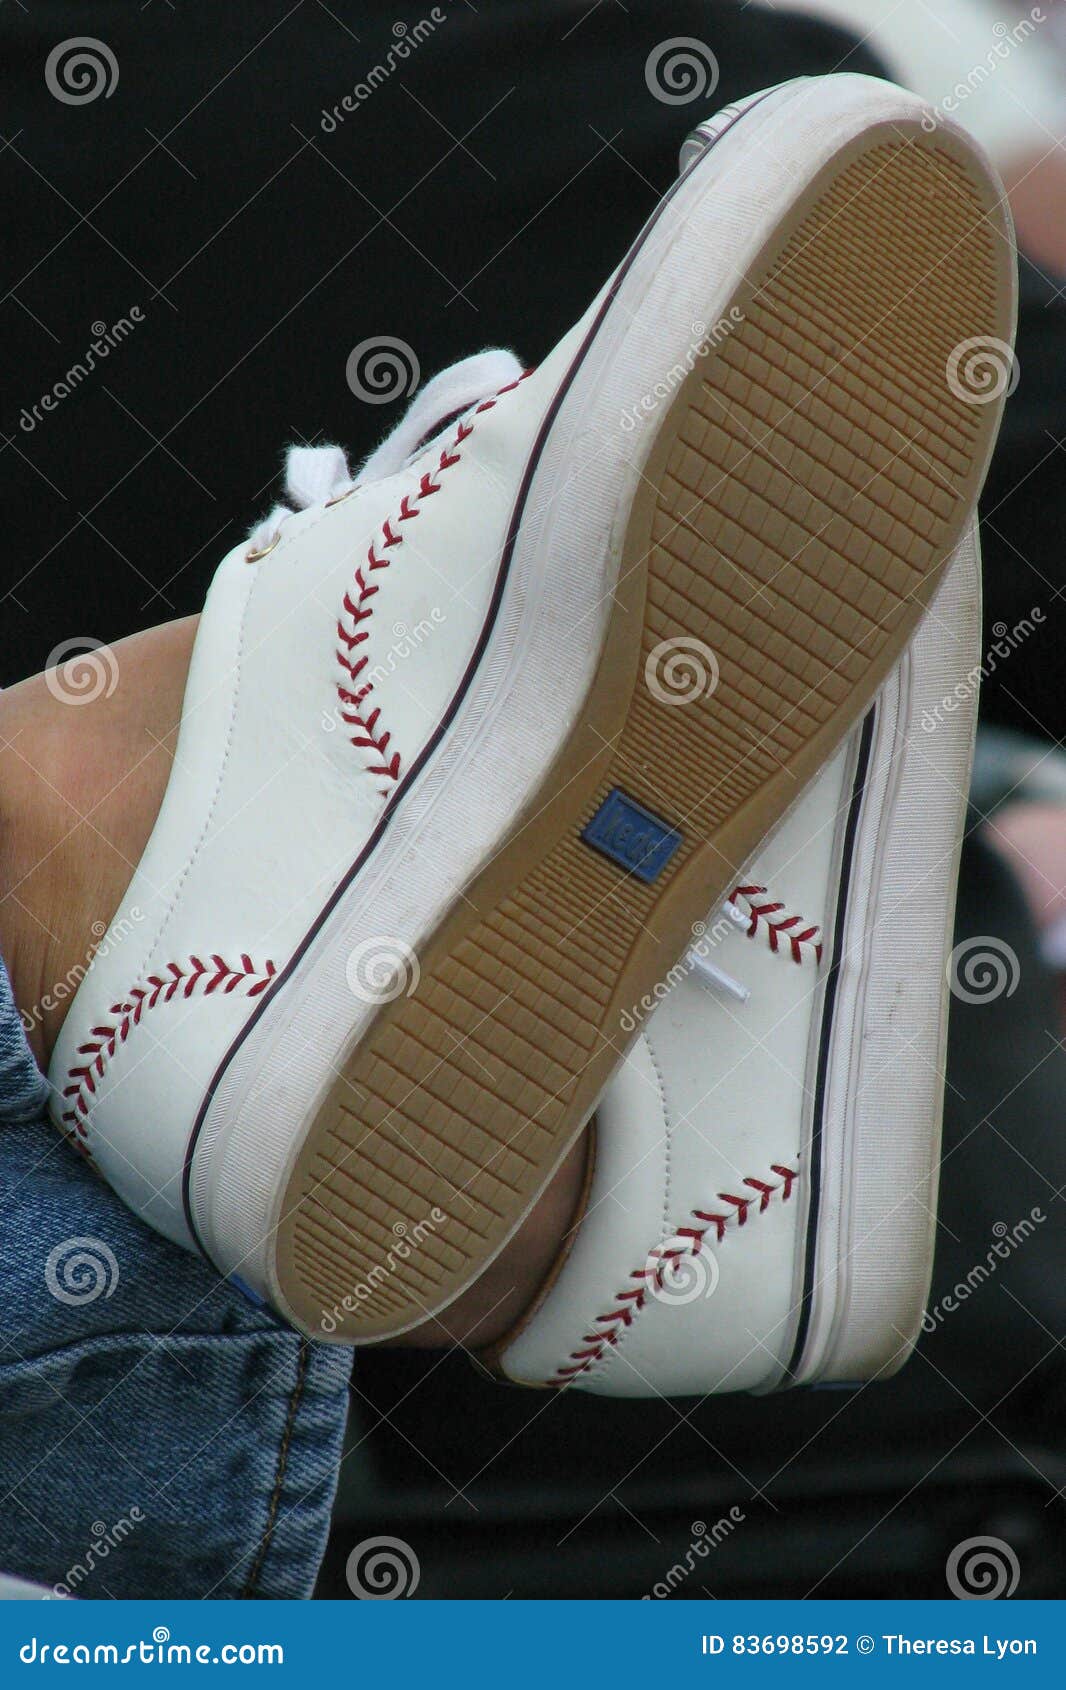 baseball shoes keds